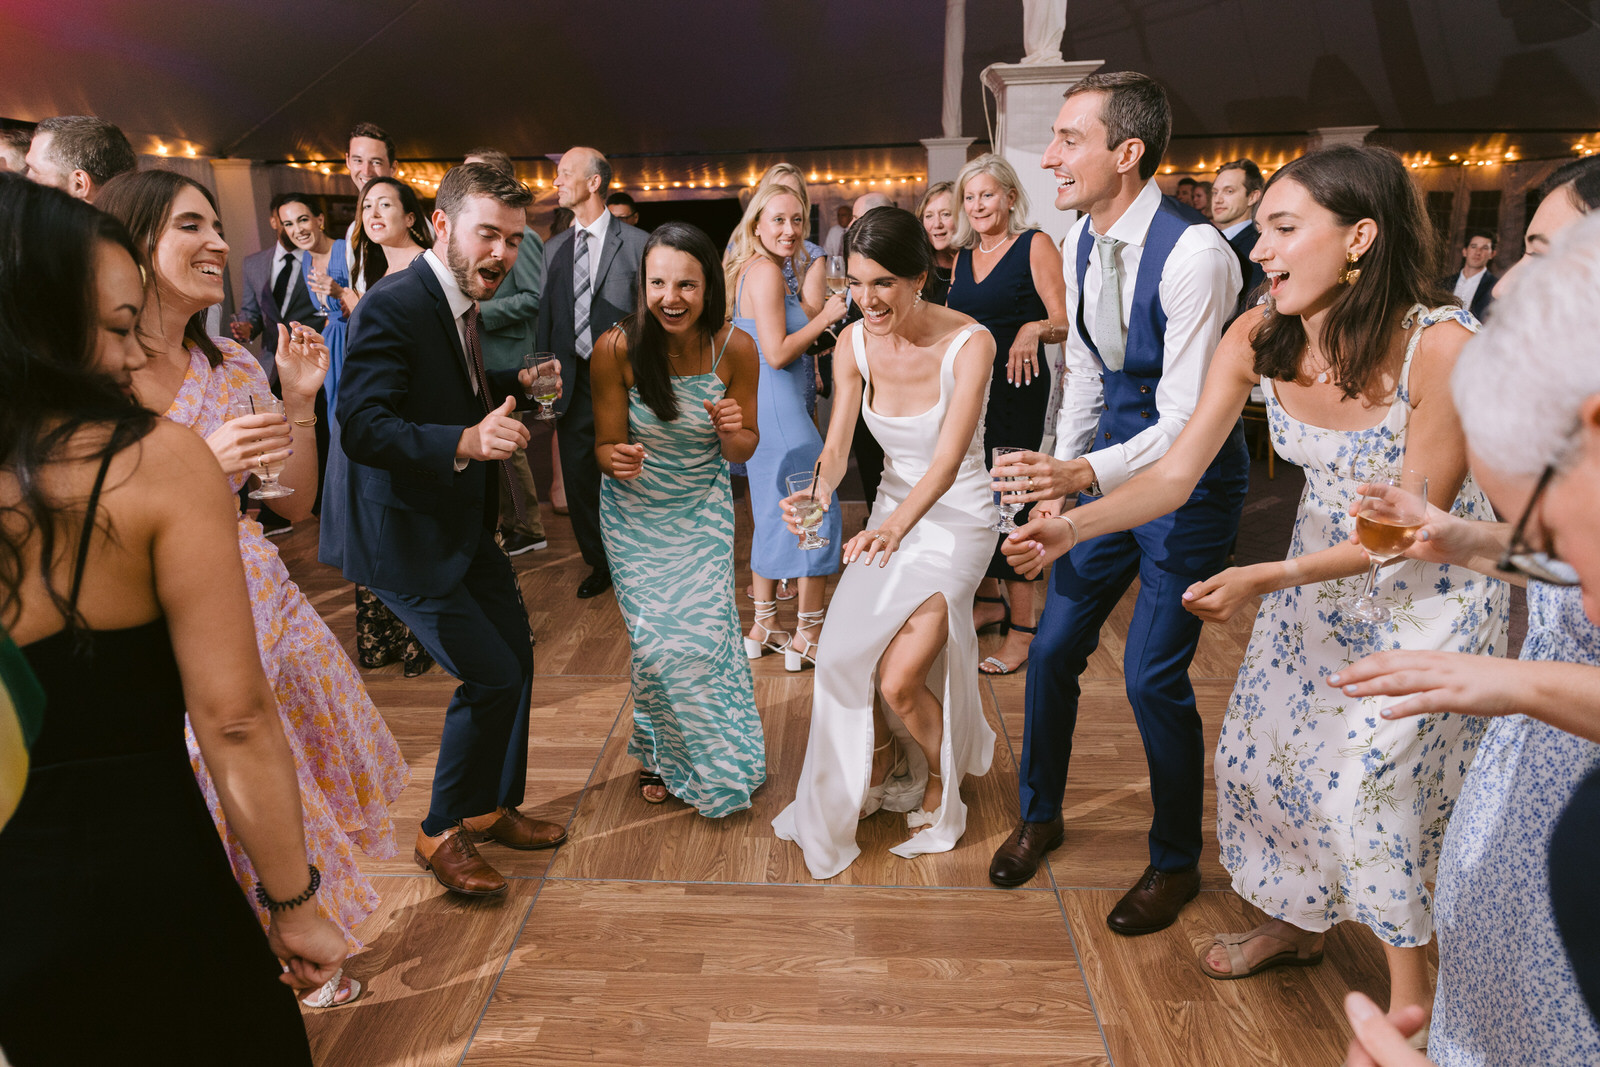 dancing at reception hildene summer wedding vermont